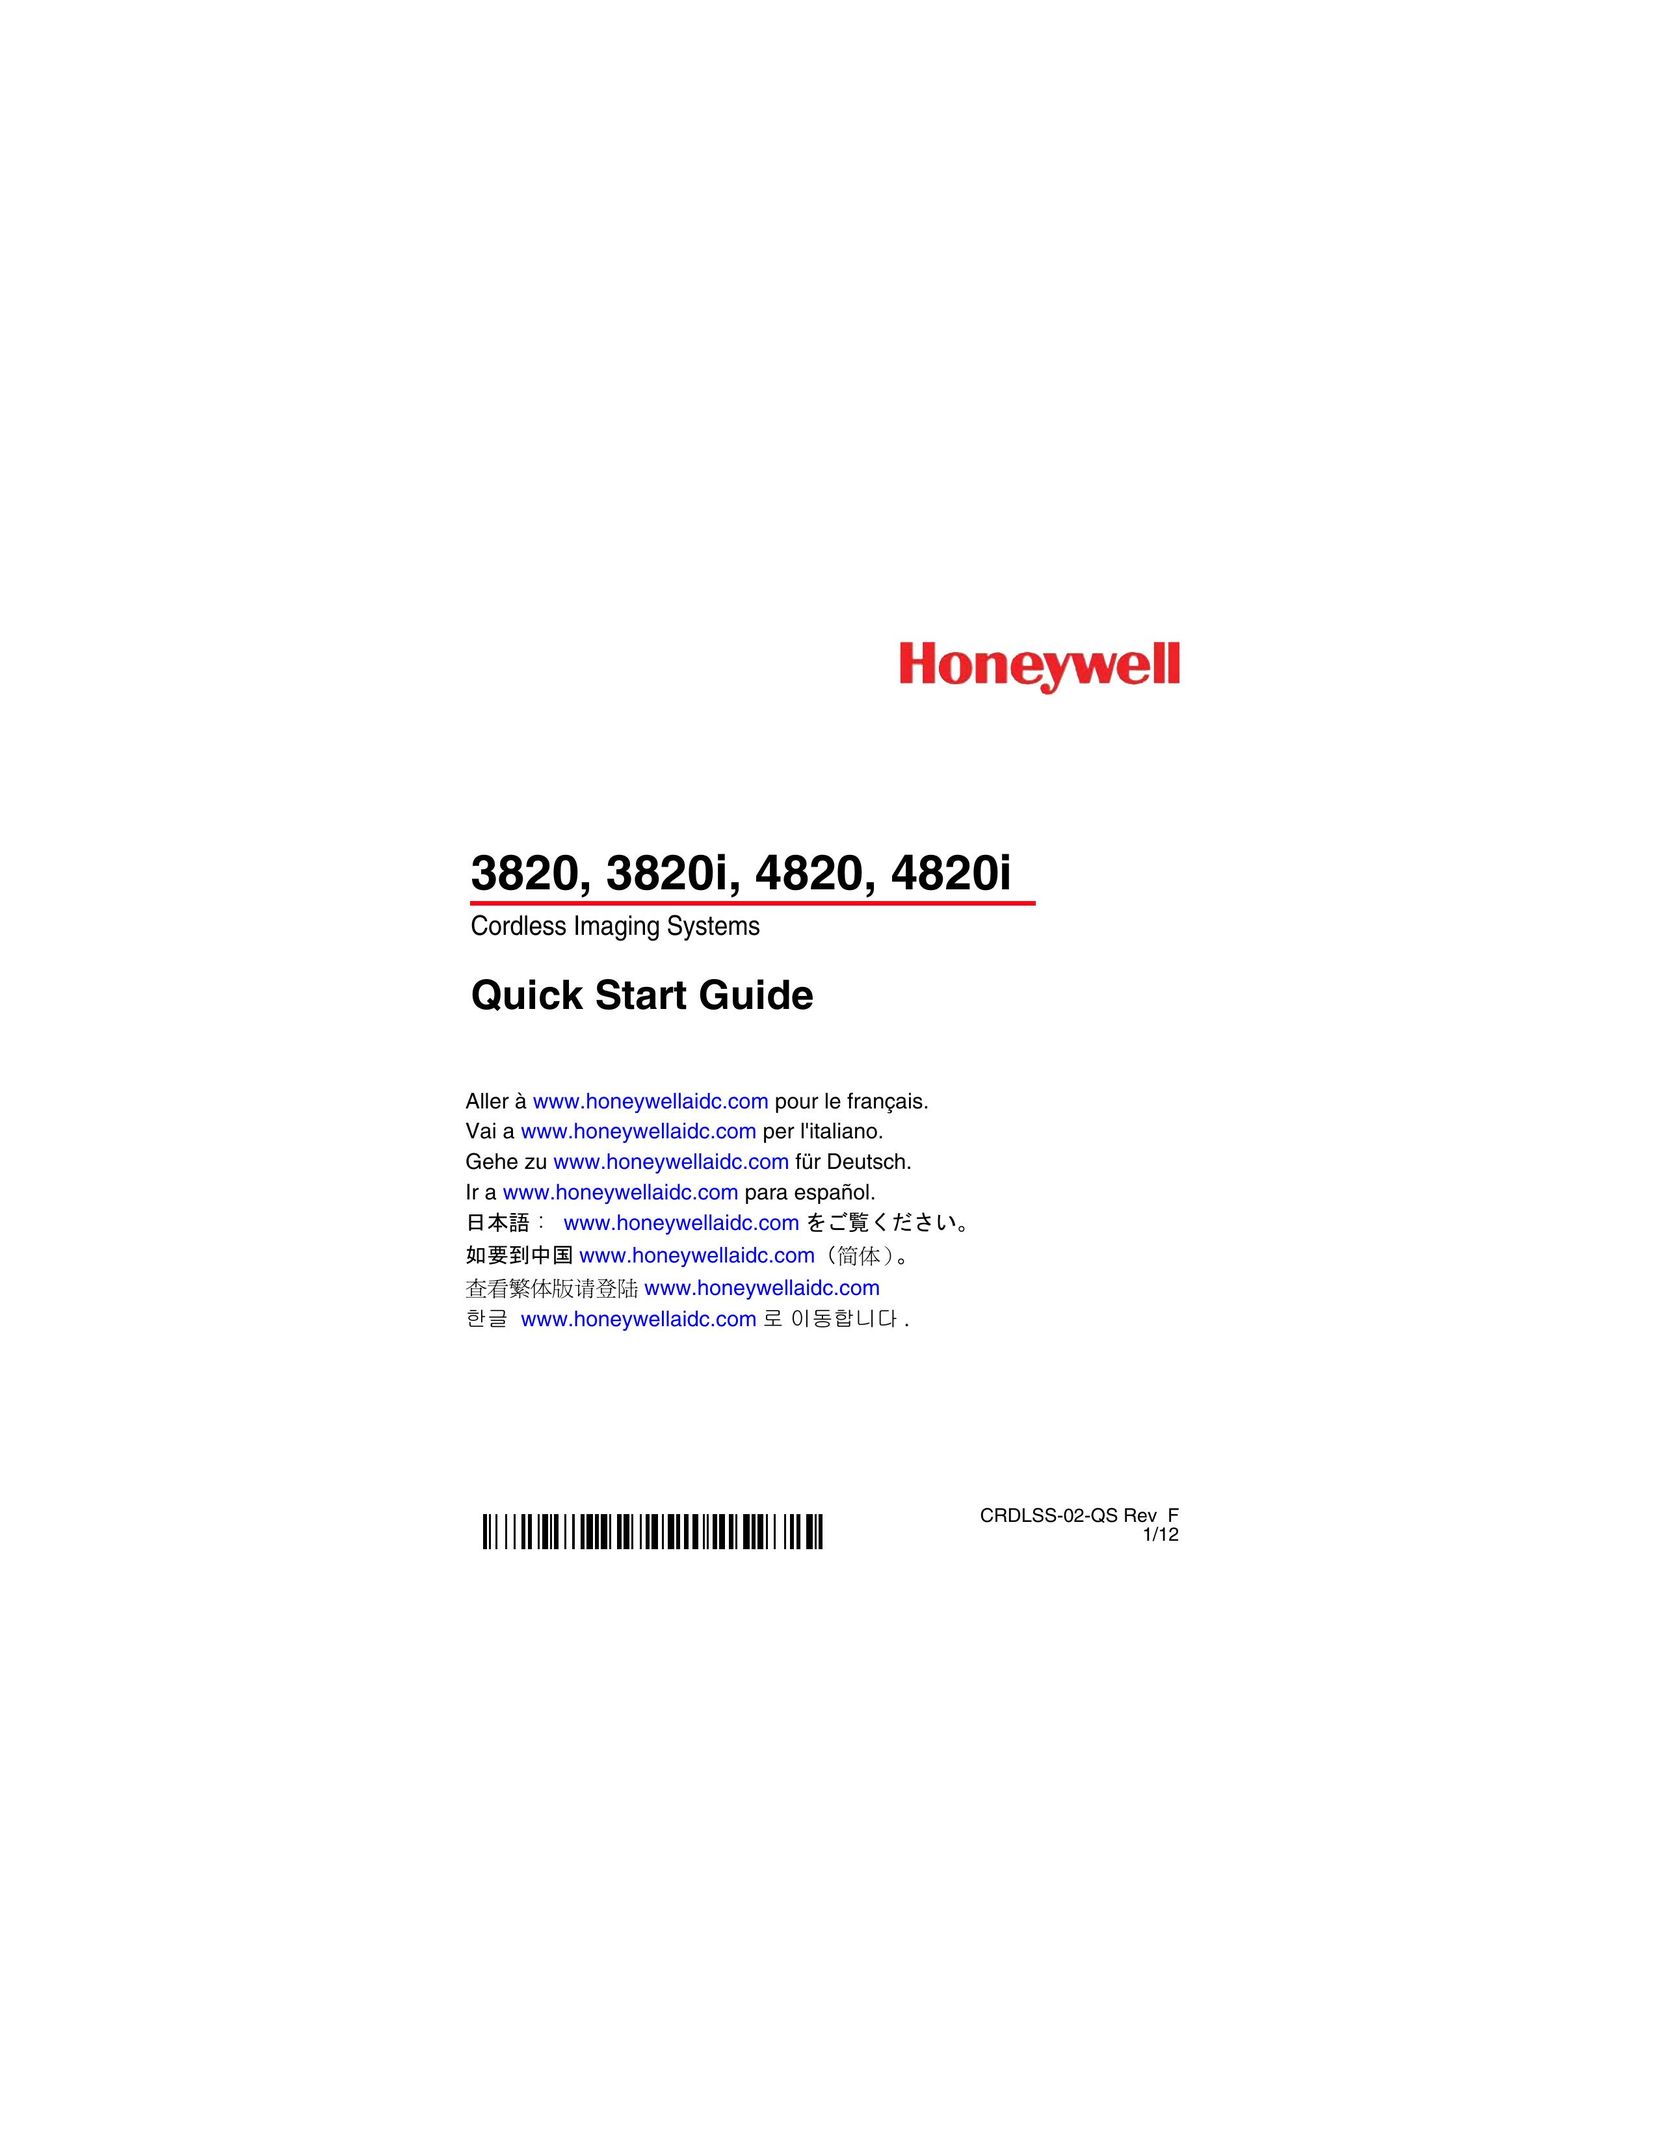 Honeywell 4820i Scanner User Manual